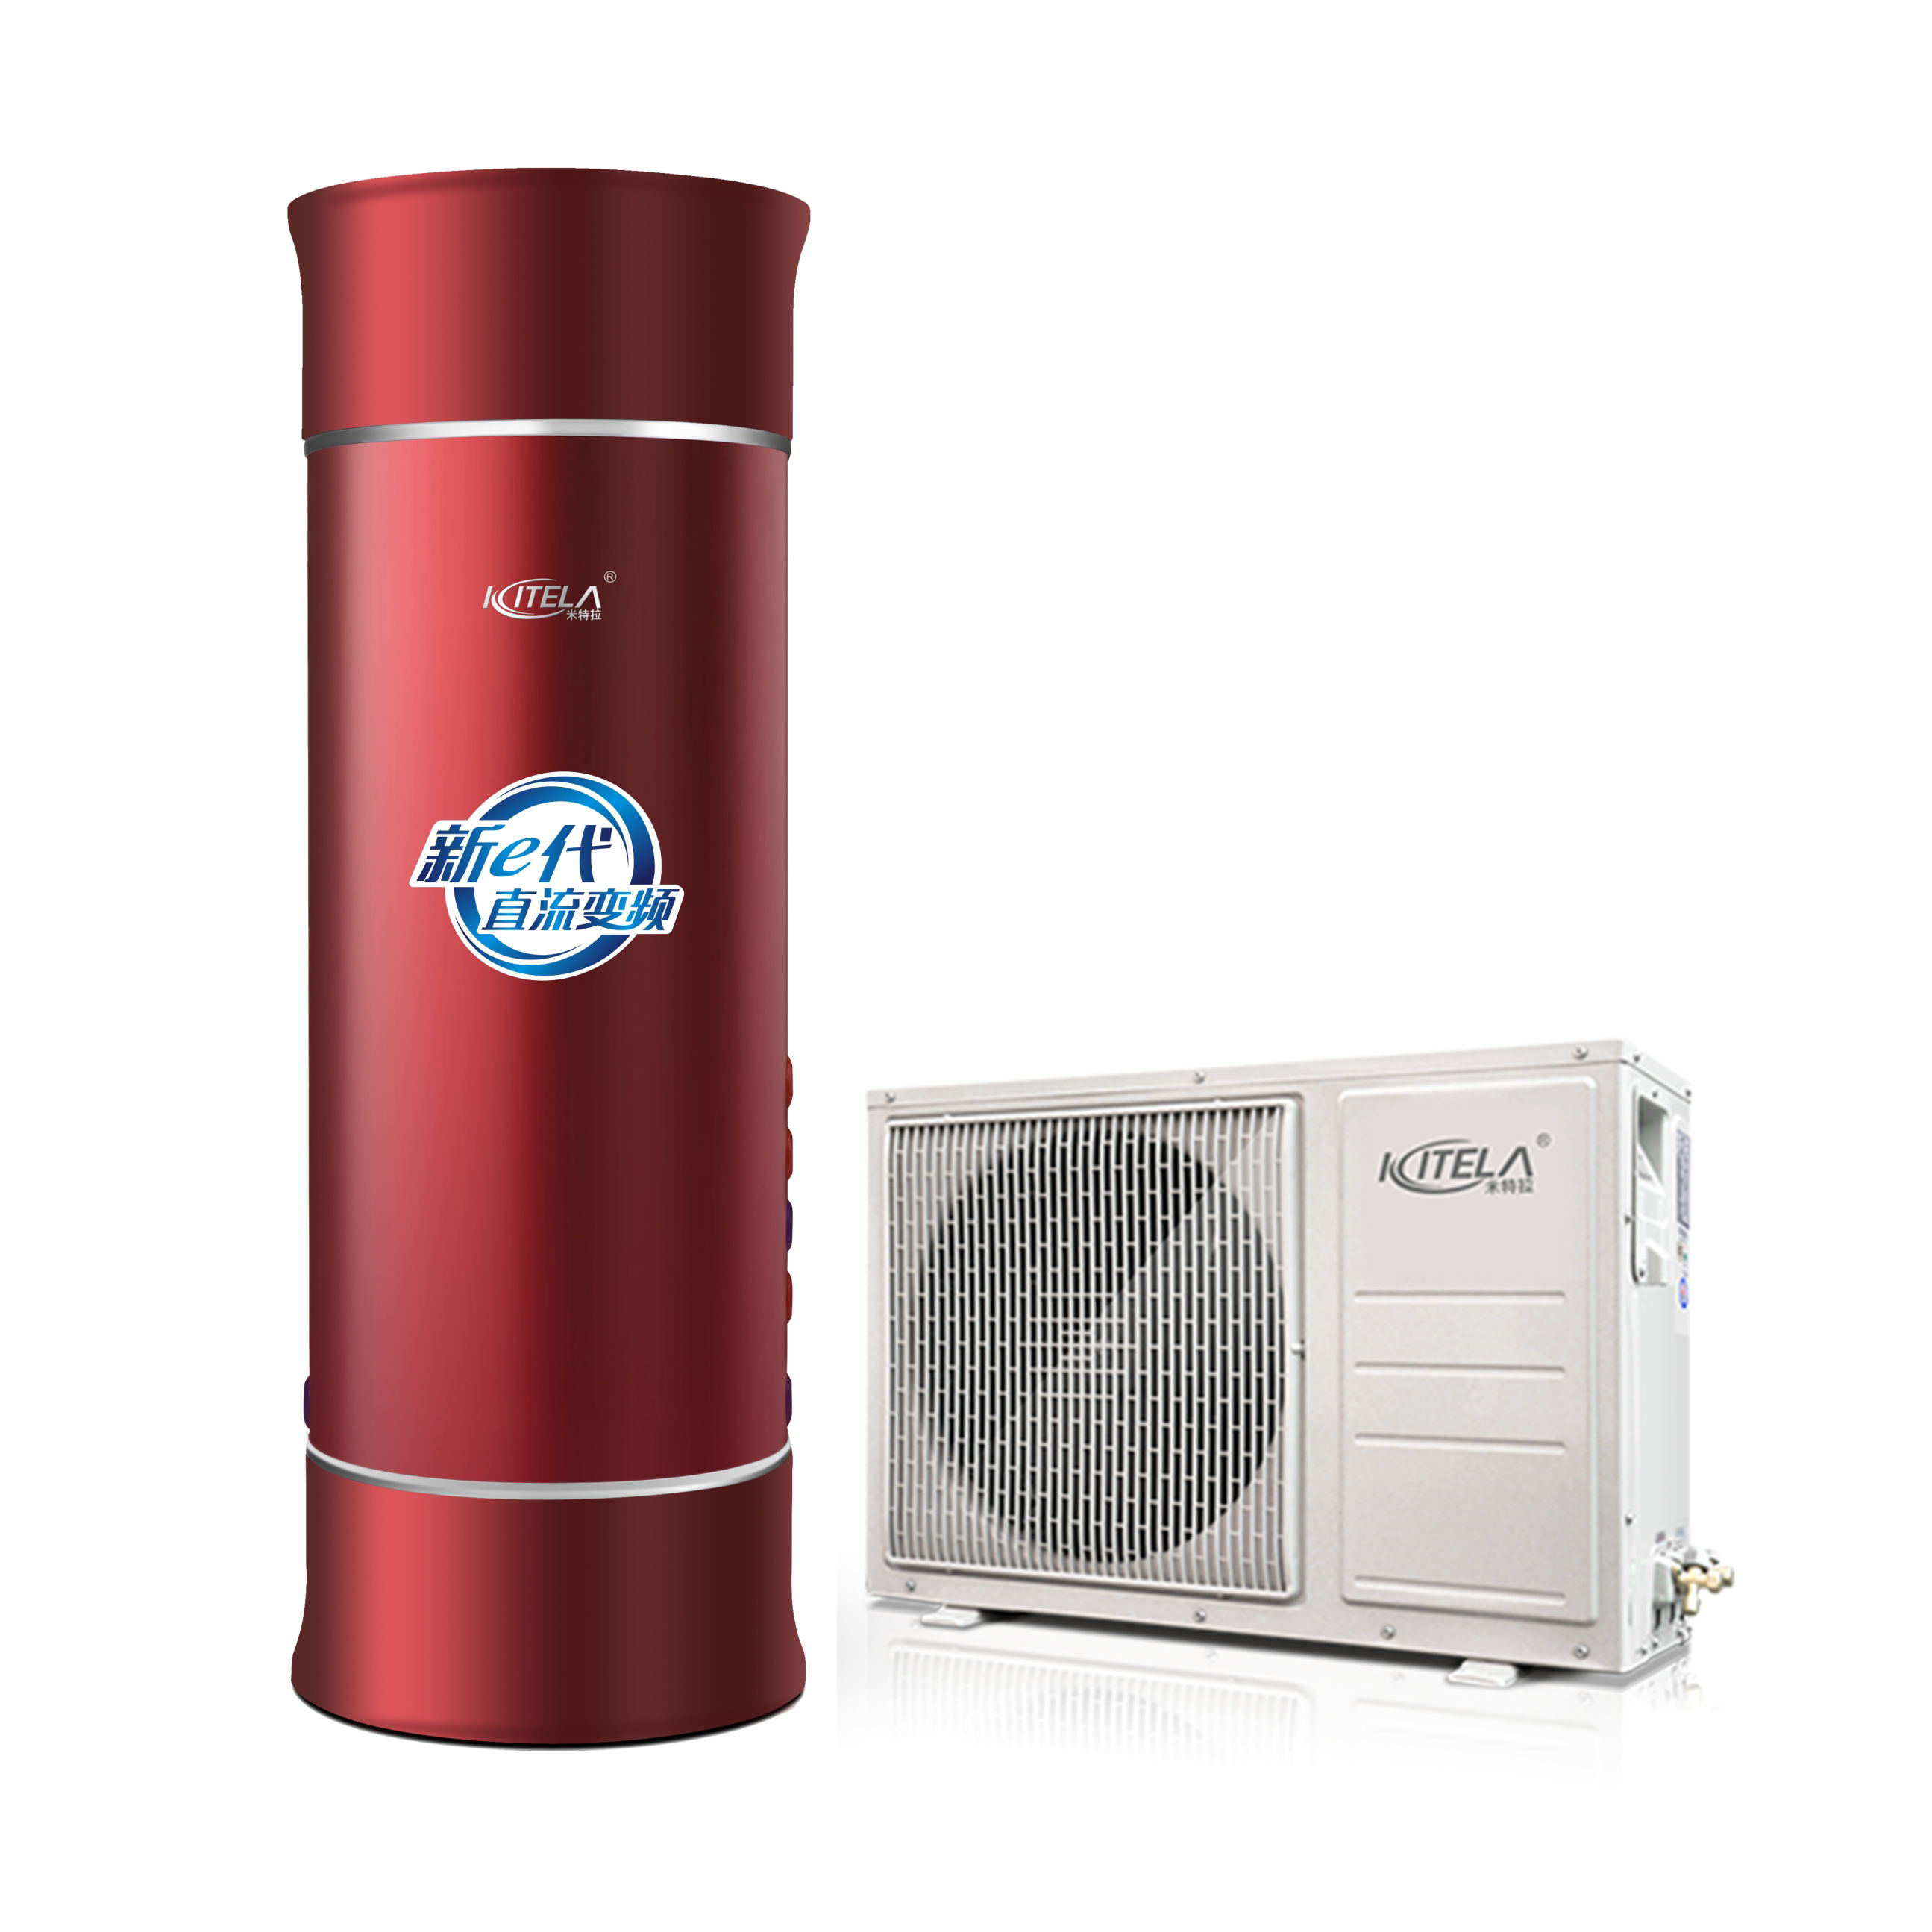 米特拉1.5P直流变频空气能热水器-芯智系列